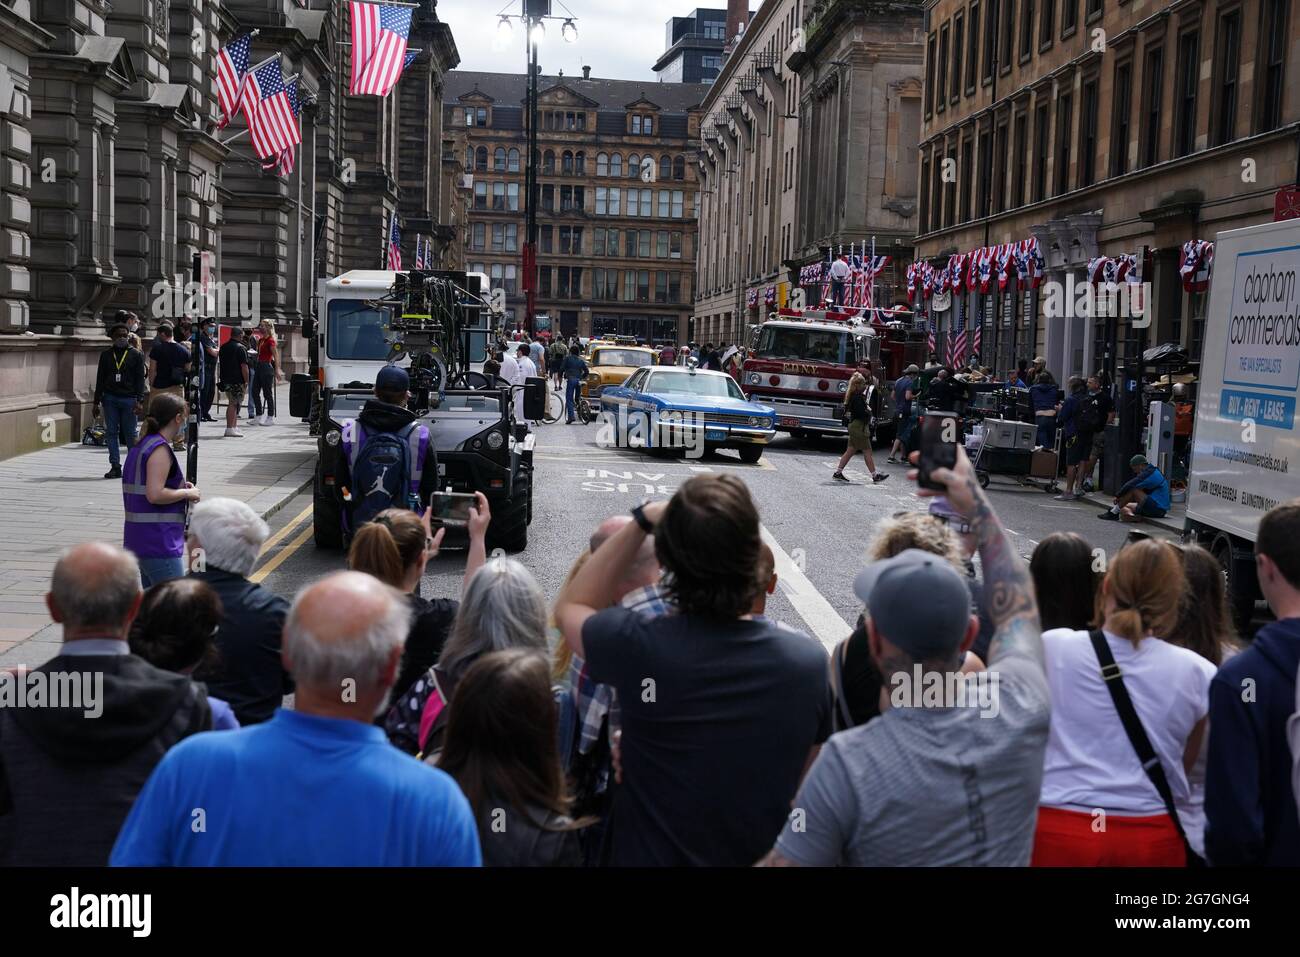 Fans fotografieren Besetzung und Crew in der Cochrane Street, Glasgow, bevor sie für den vermutlich neuen Indiana Jones 5-Film mit Harrison Ford drehen. Bilddatum: Mittwoch, 14. Juli 2021. Stockfoto